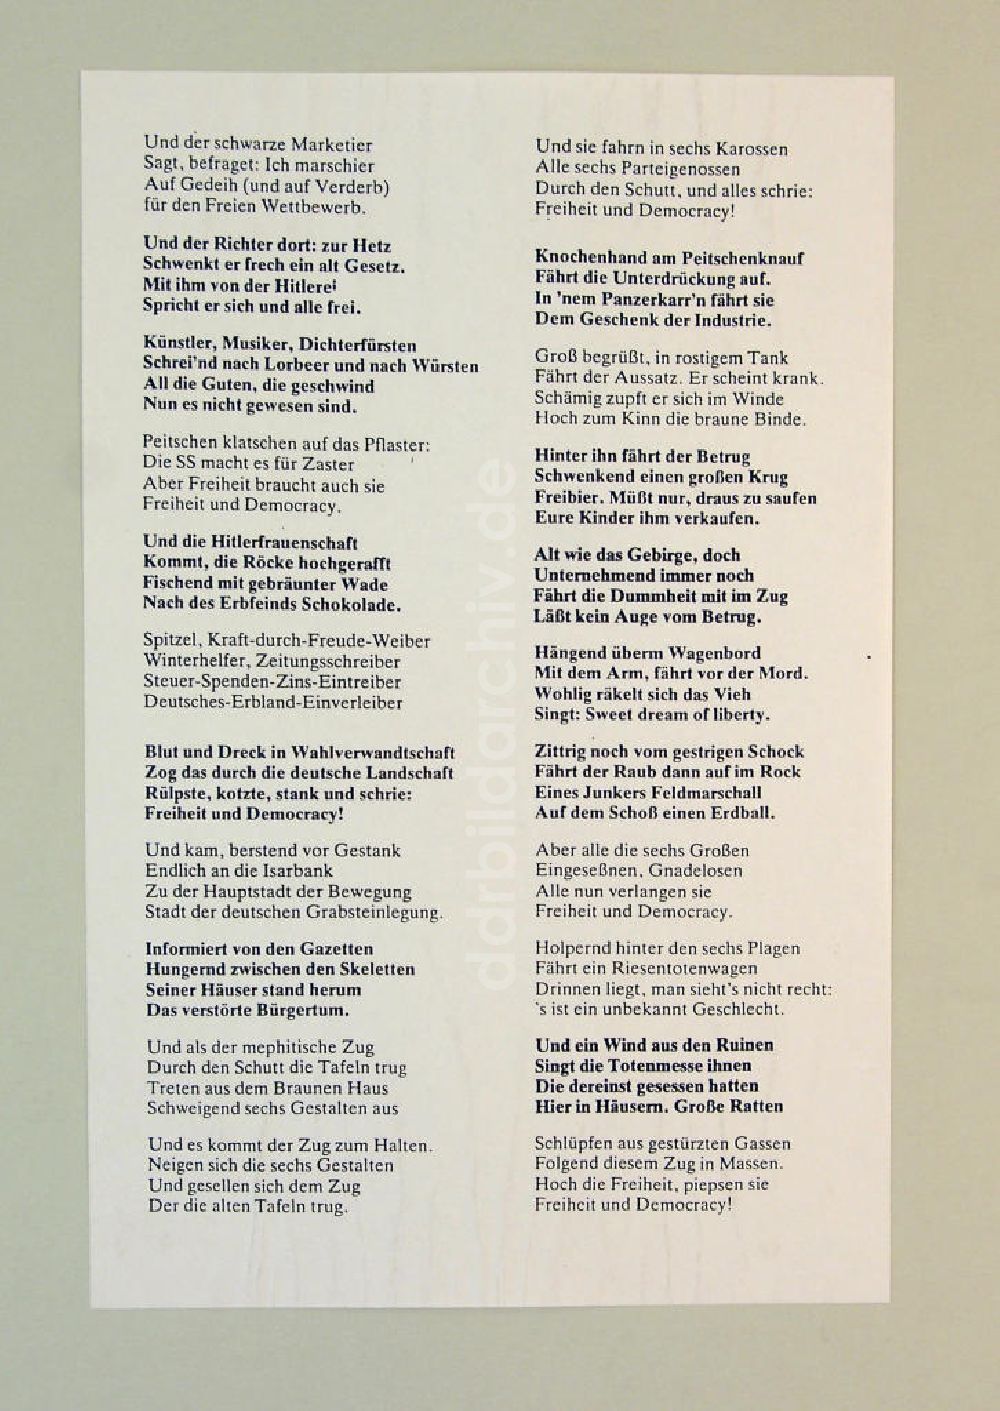 Berlin: Gedicht Der Anachronistische Zug oder Freiheit und Democracy von Bertolt Brecht aus dem Jahr 1947, Strophe 20-41